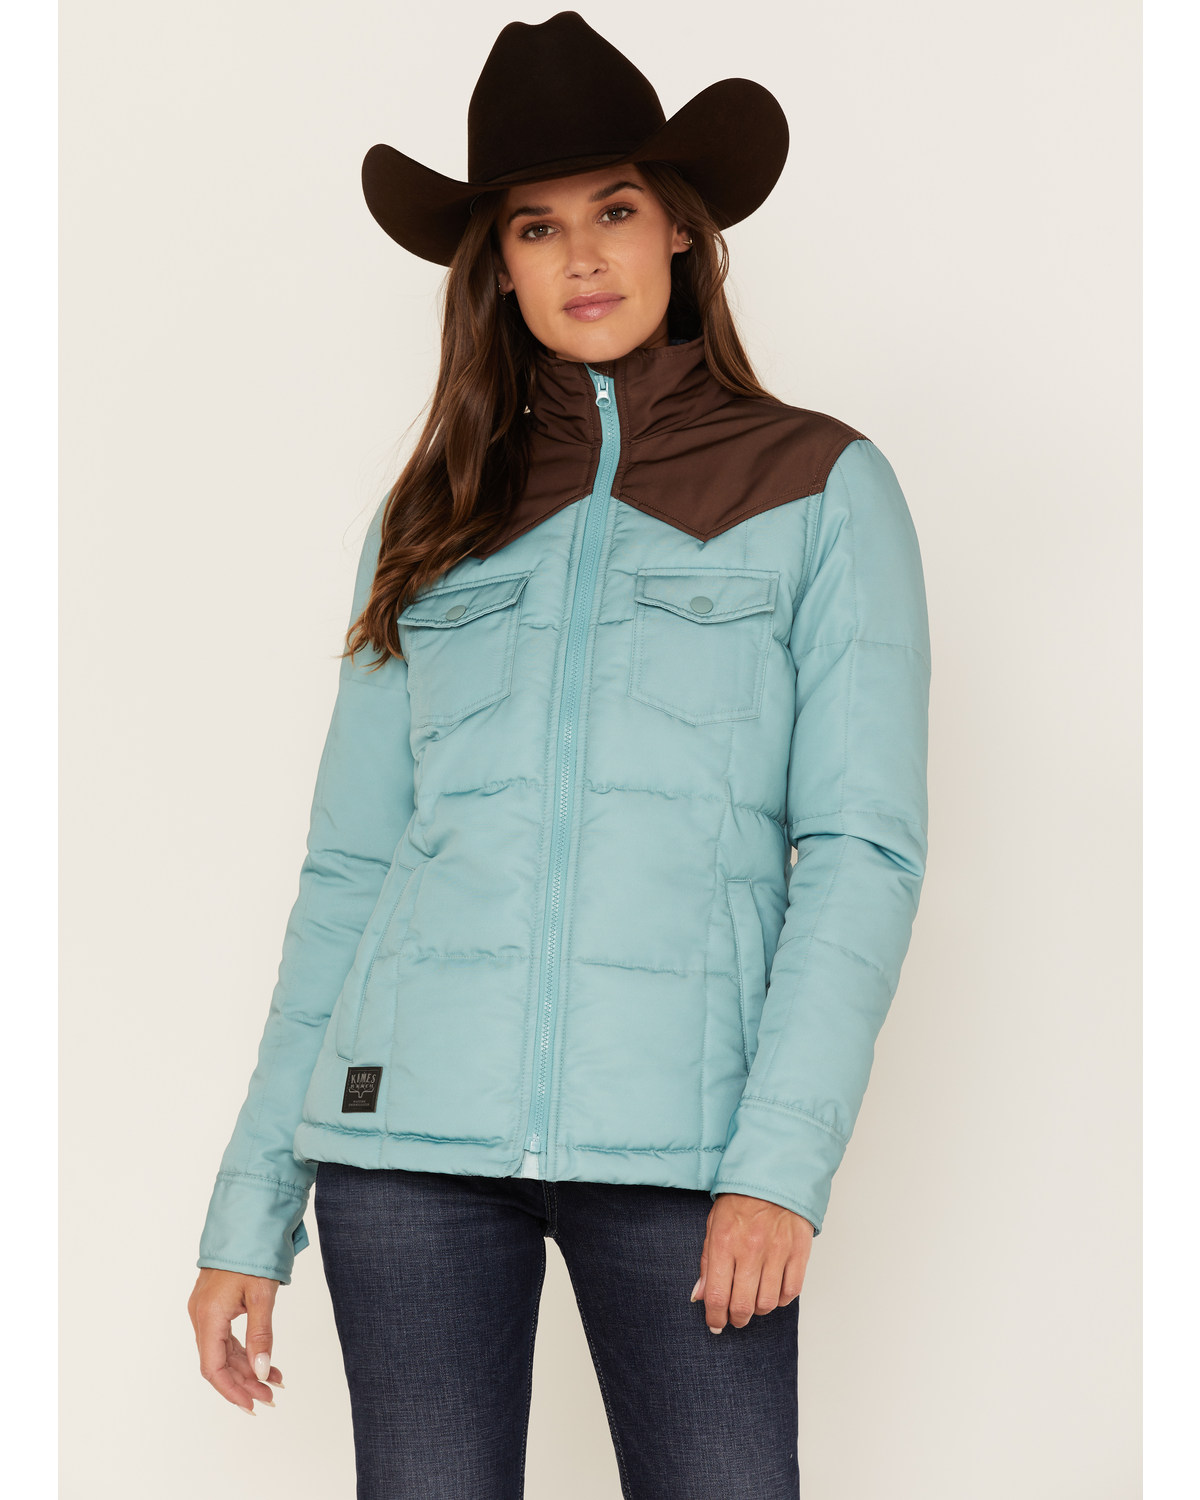 Kimes Ranch Women's Wyldfire Puffer Jacket